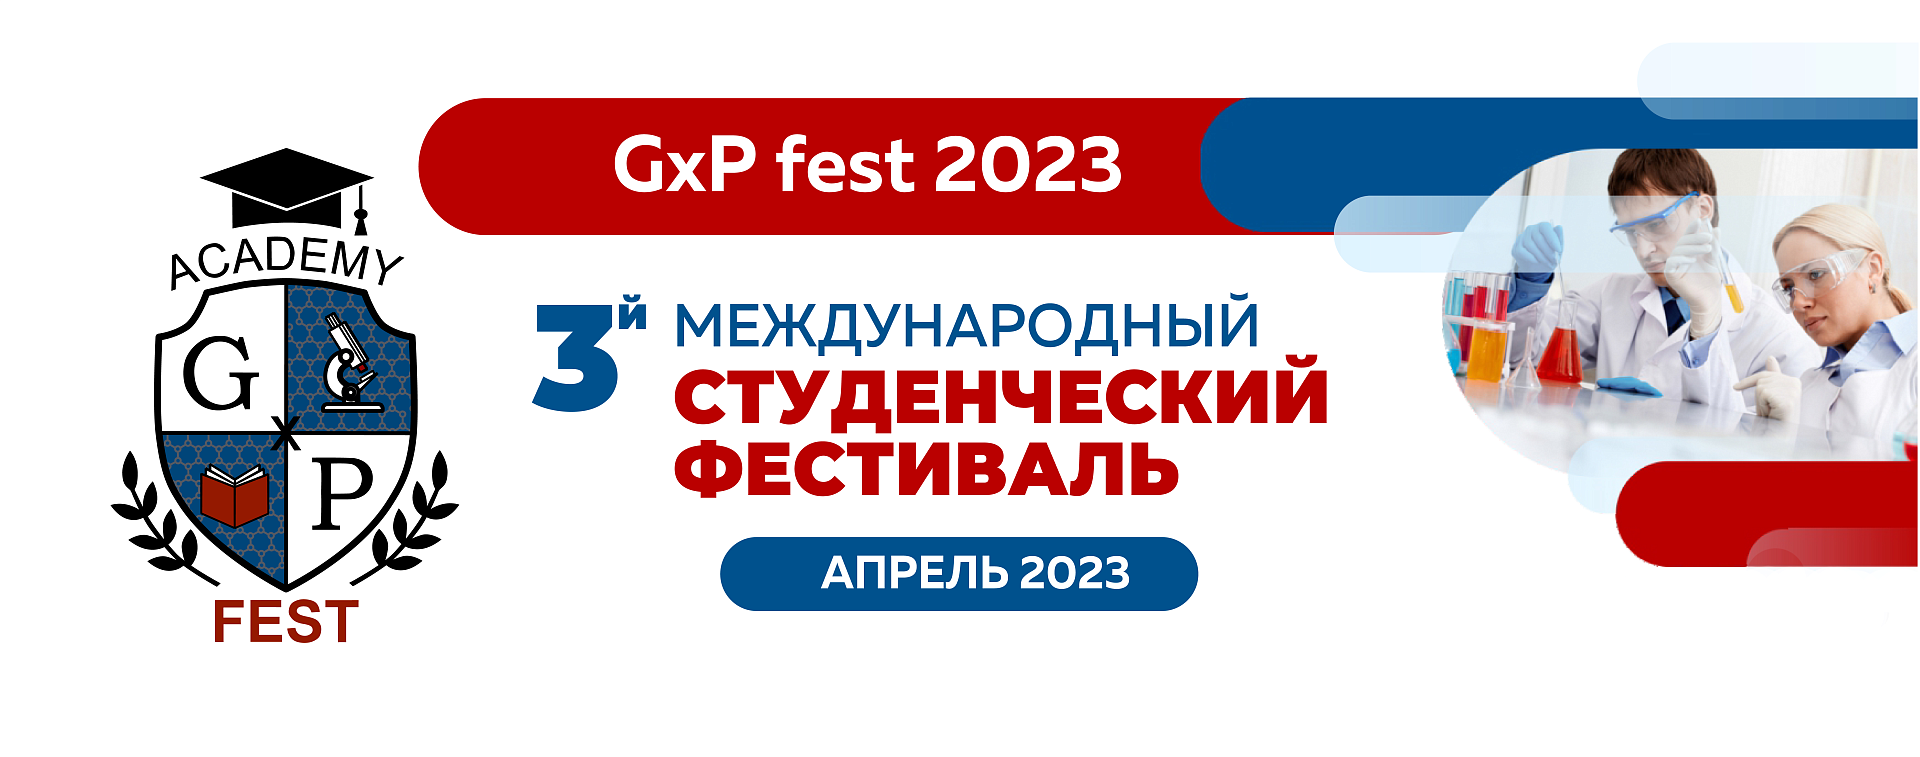 Программа финального этапа 21.04.2023 (очный формат)